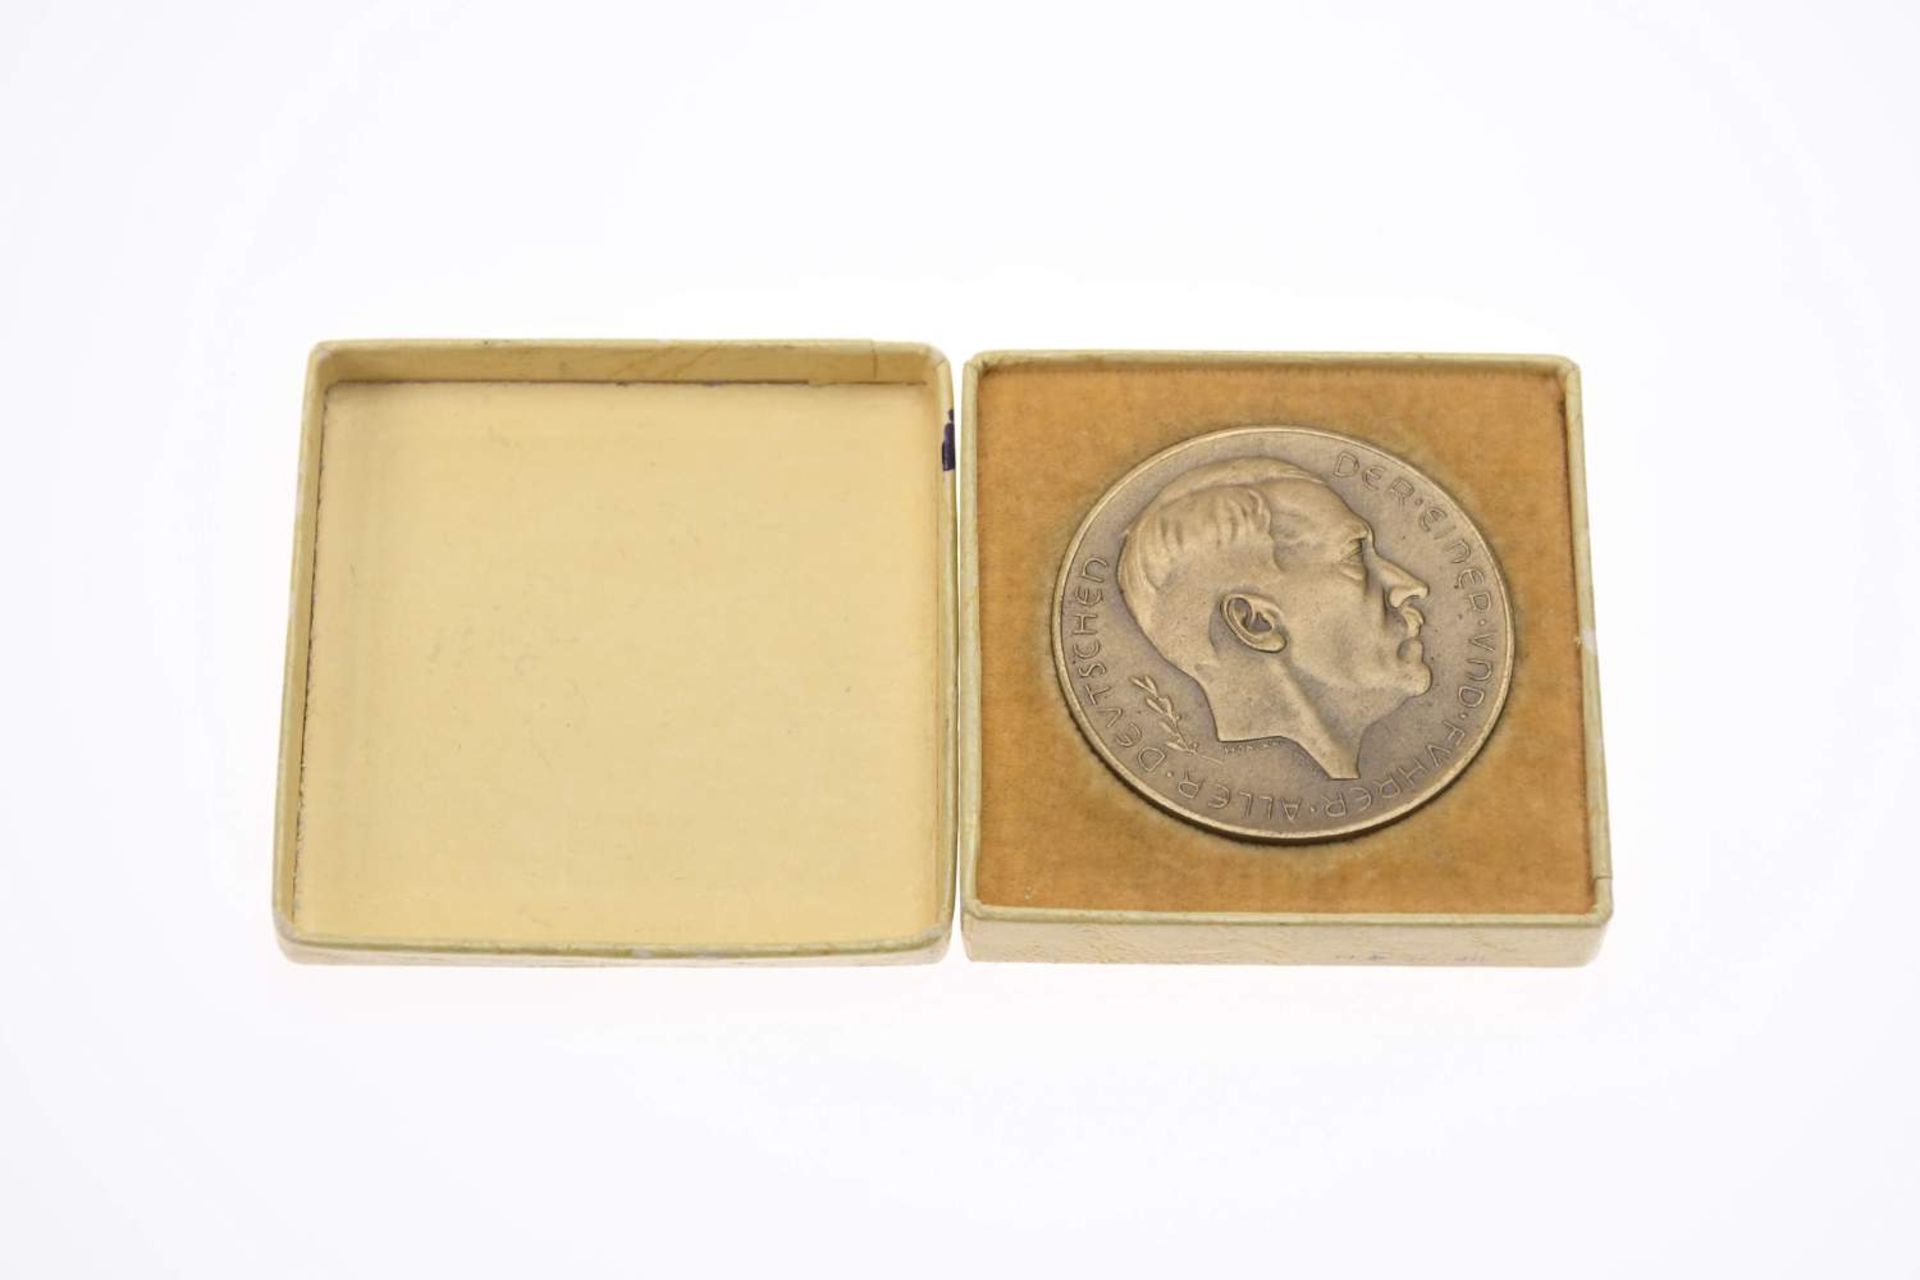 Bronzemedaille (18,75 g, 36 mm), 1938, von Hanisch-Concee, auf das Münchner Abkommen, Av: Kopf